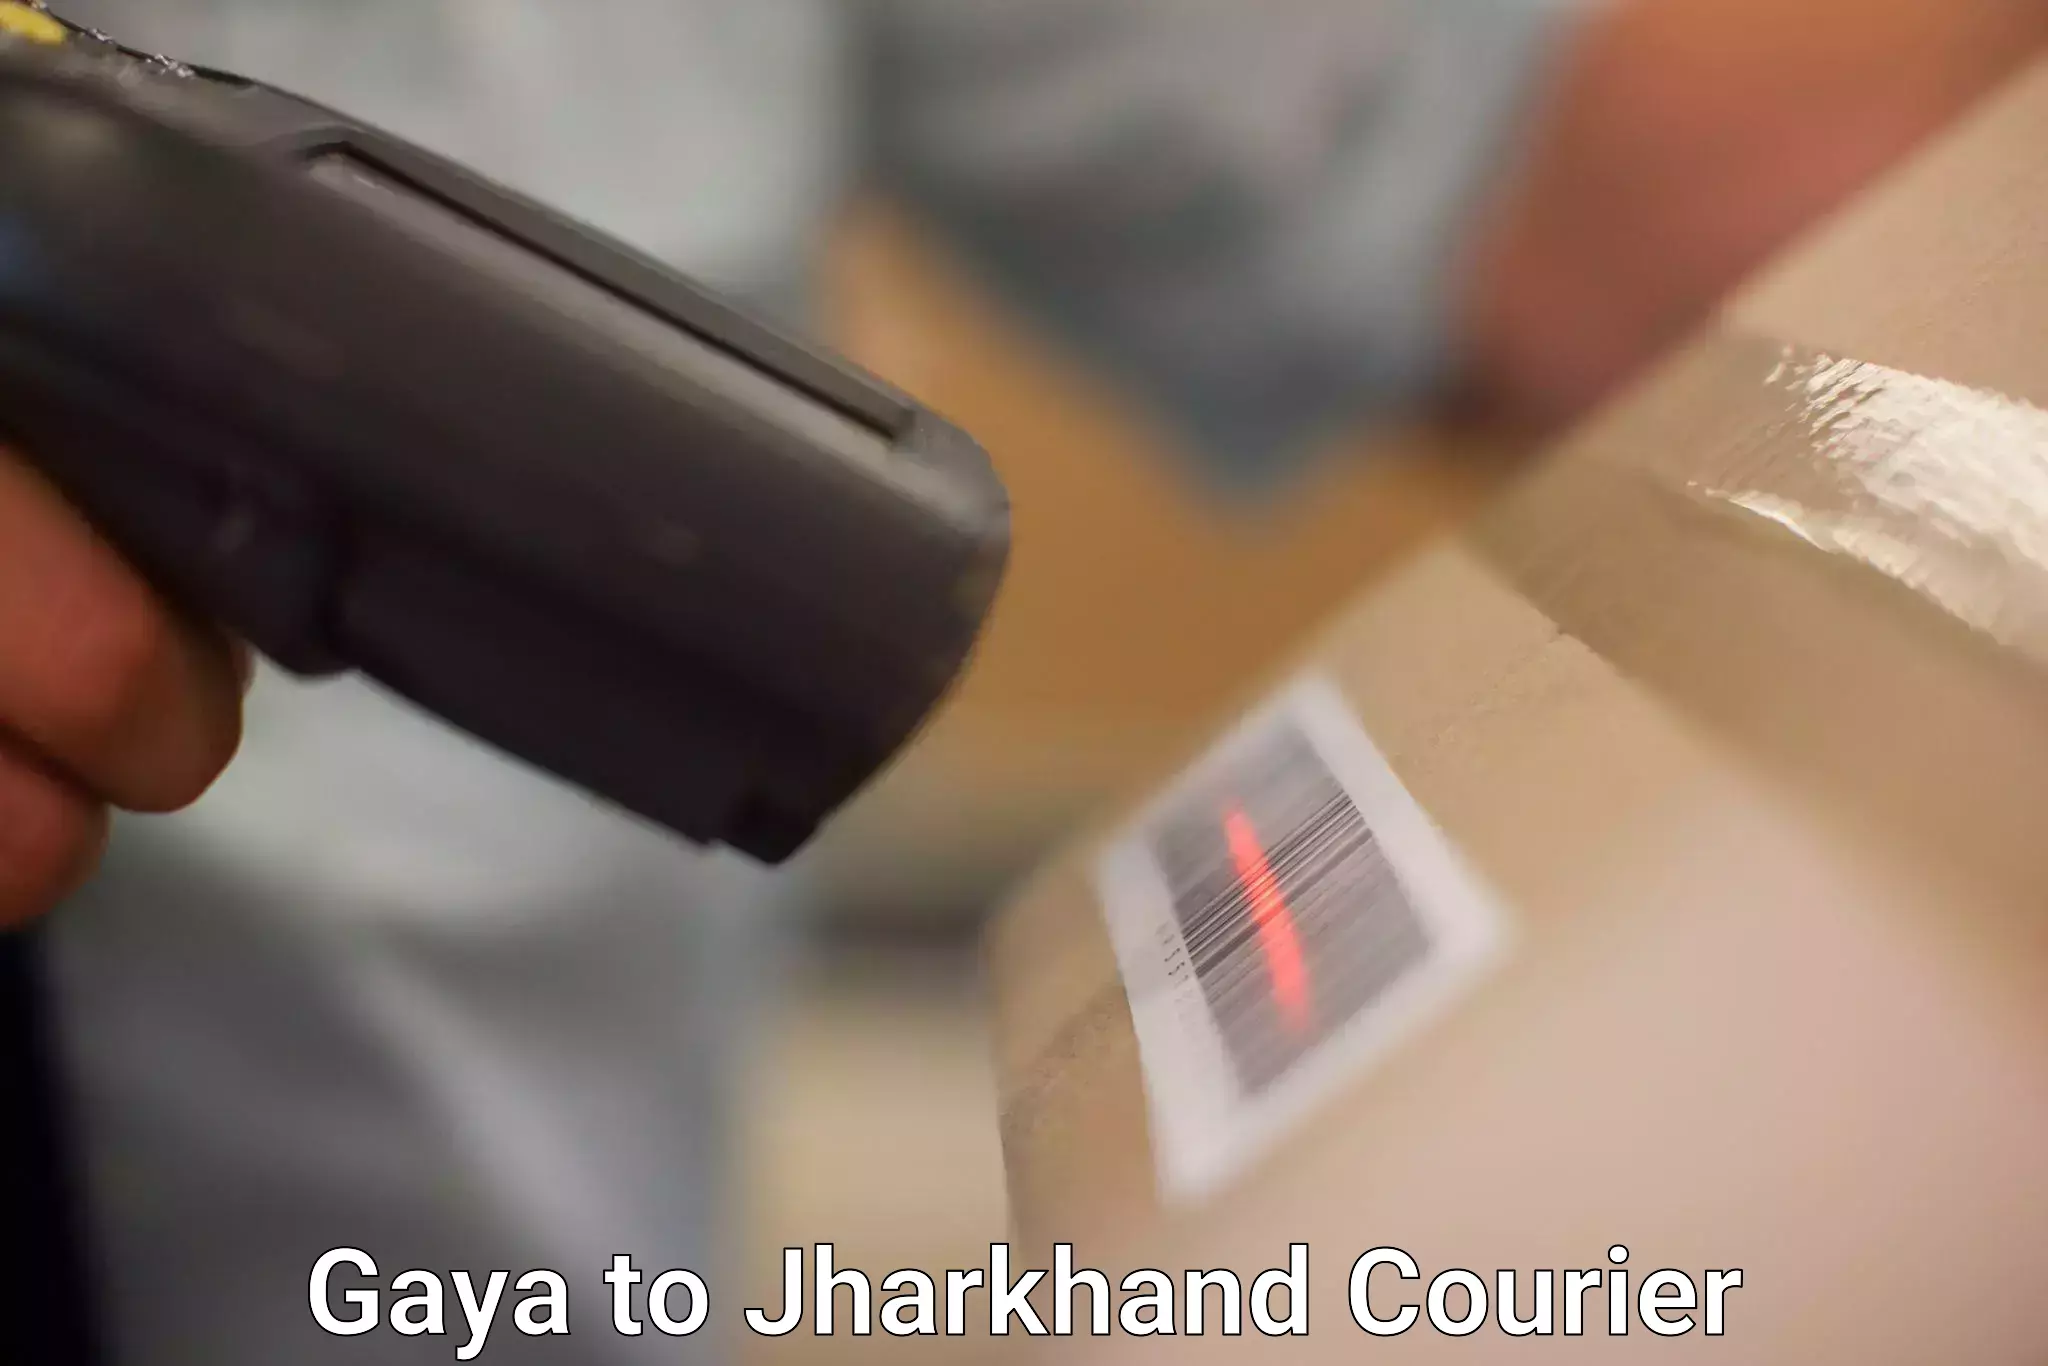 High-capacity shipping options Gaya to Dhanbad